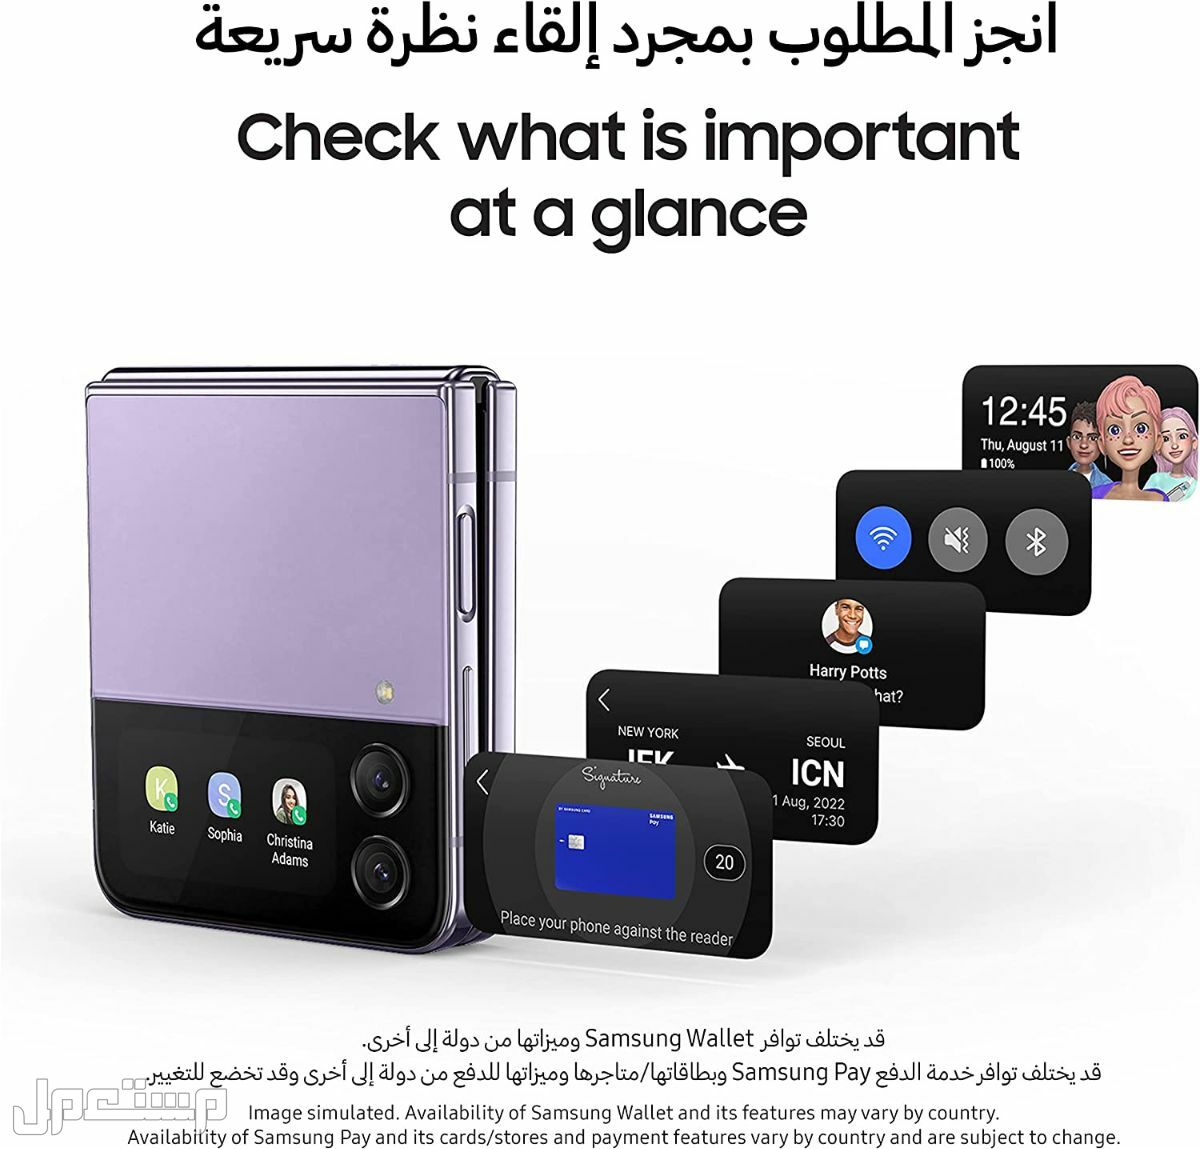 جوال جلاكسي: تعرف على مواصفات وأسعار وأهم مميزات جوال جلاكسي في المغرب هاتف جلاكسي